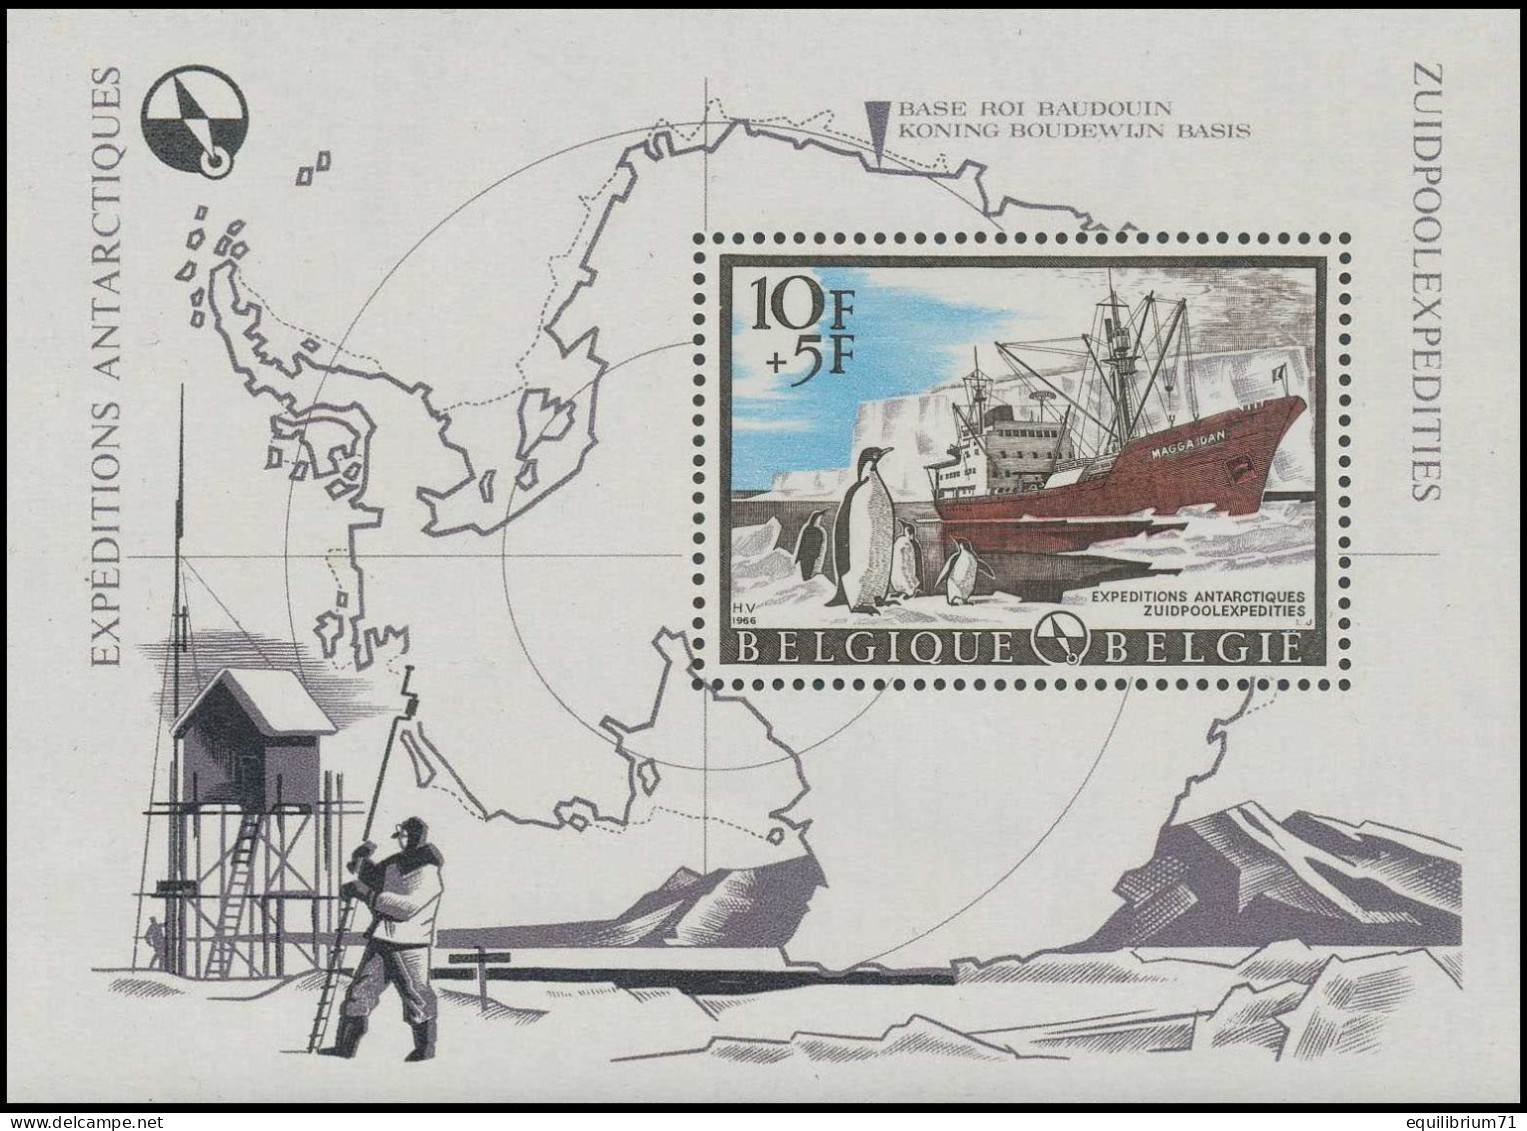 BL42**(1394) - Expéditions Antarctiques / Zuidpoolexpedities / Antarktis-Expeditionen / Antarctic Expedition - BELGIQUE - Polarforscher & Promis